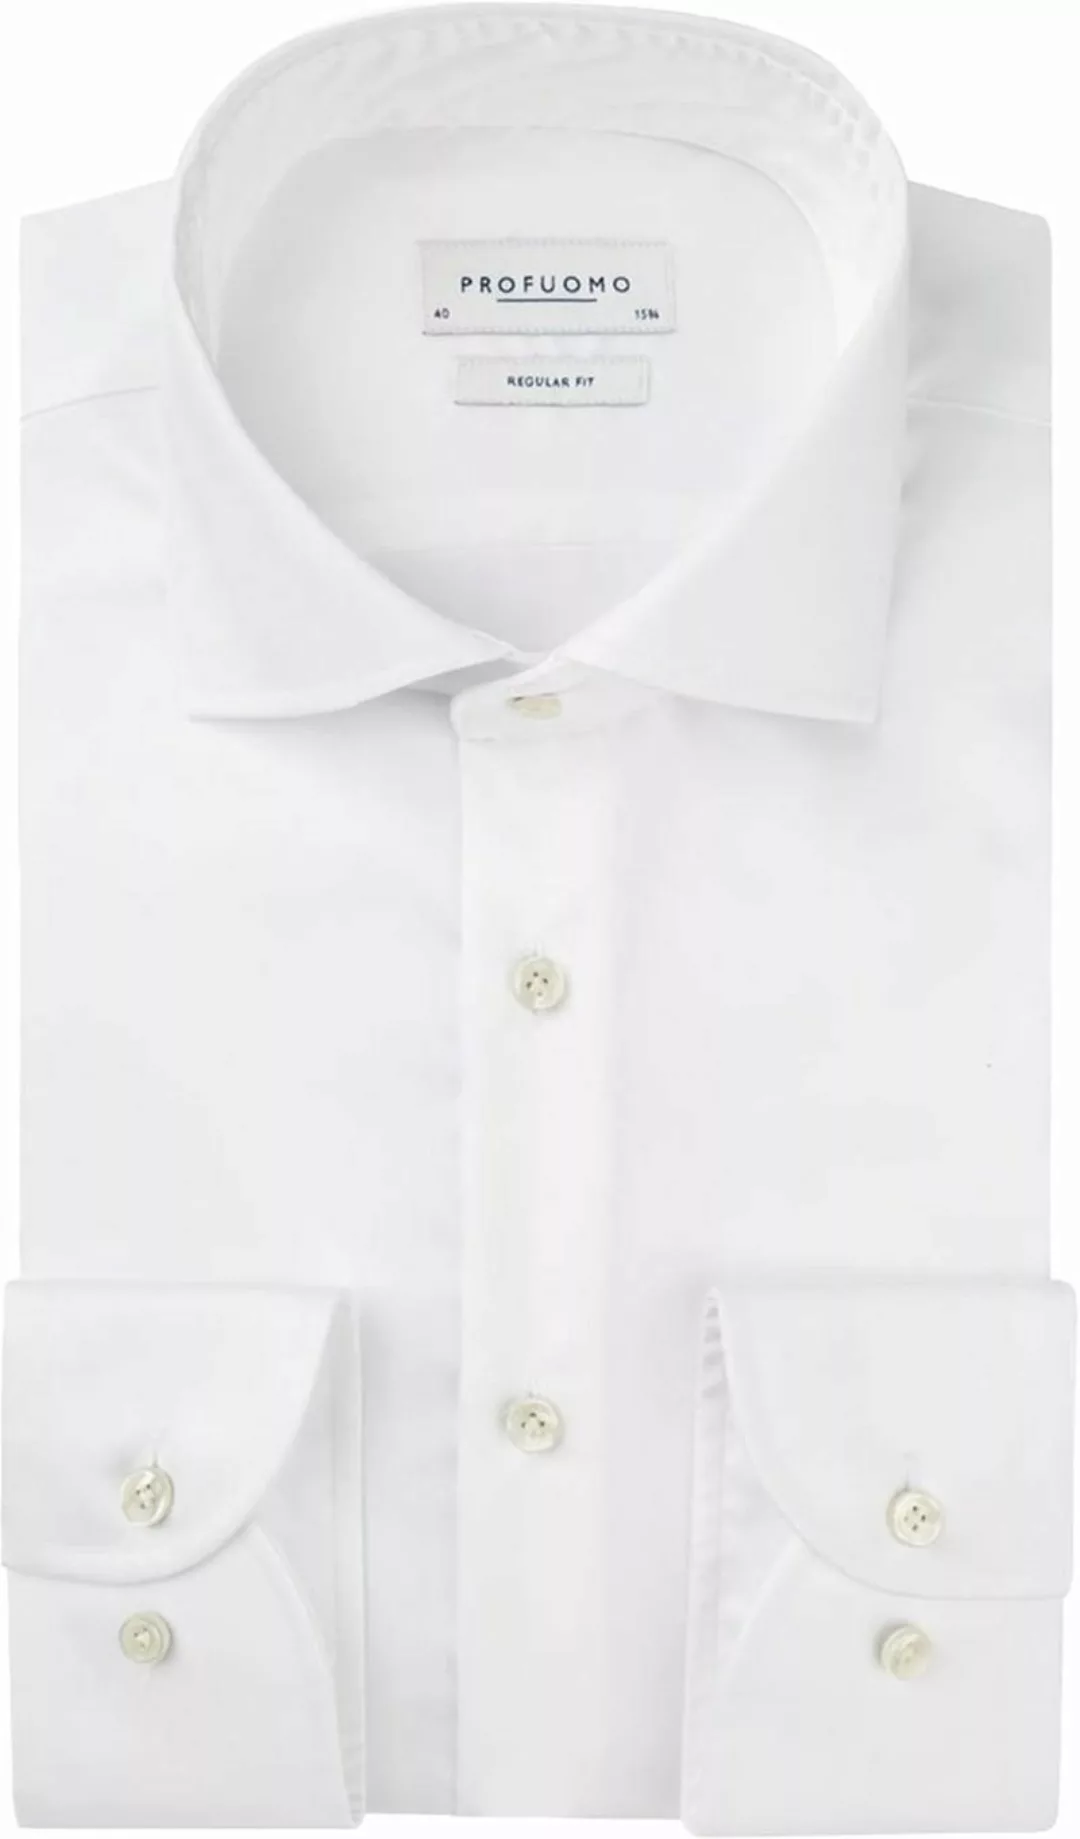 Profuomo Originale Hemd RF Weiß - Größe 45 günstig online kaufen